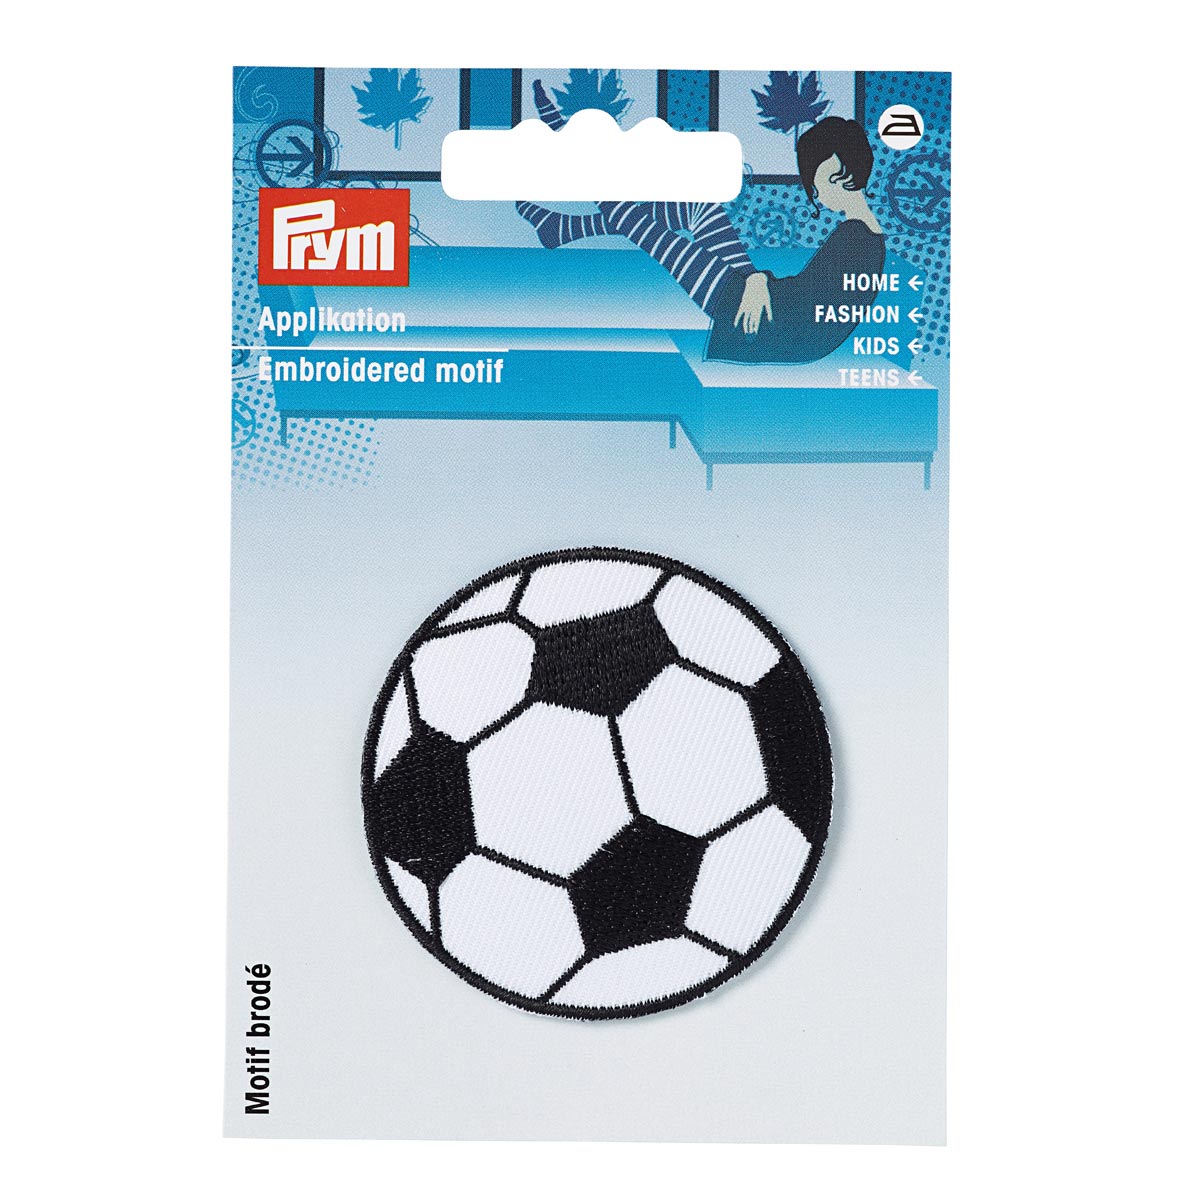 Термоаппликация Prym нашивка Футбольный мяч 7.3 см для ремонта и украшения одежды 925274 - фото 10